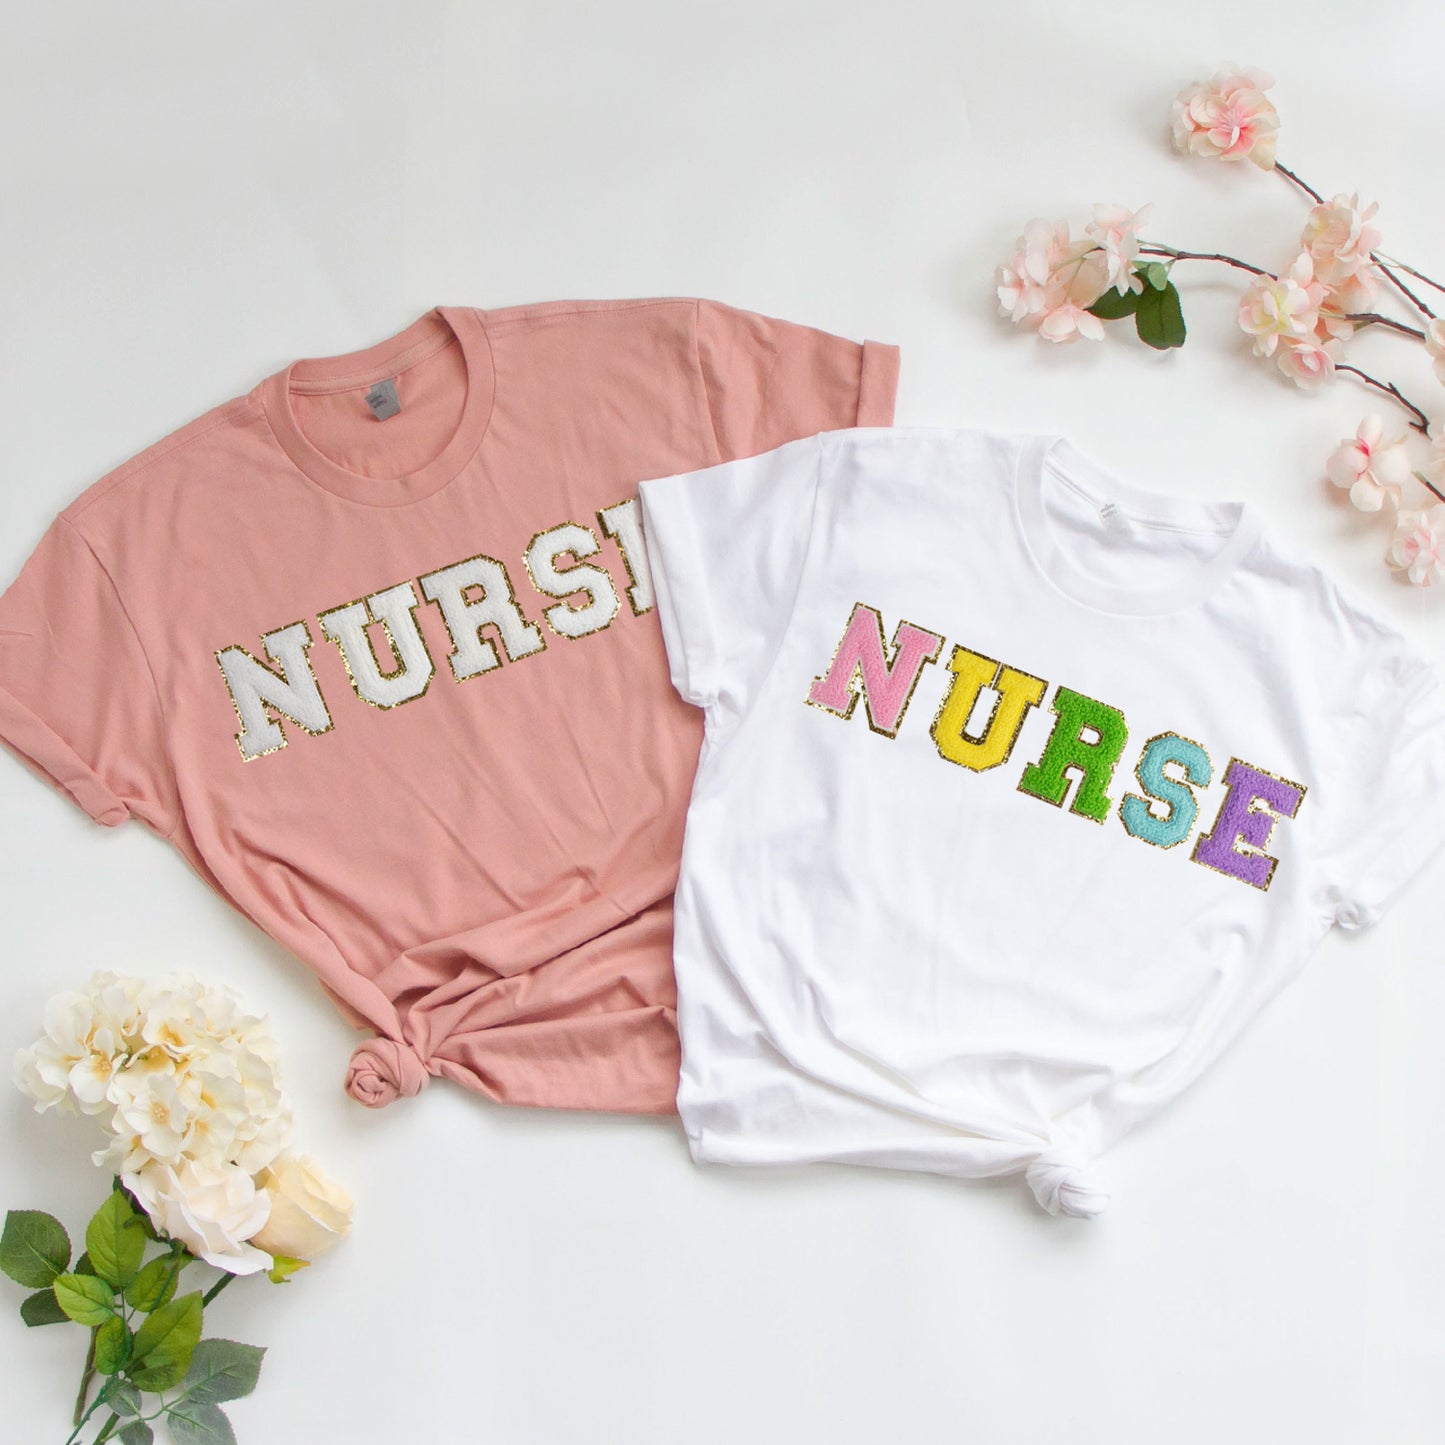 Nurse T-Shirt